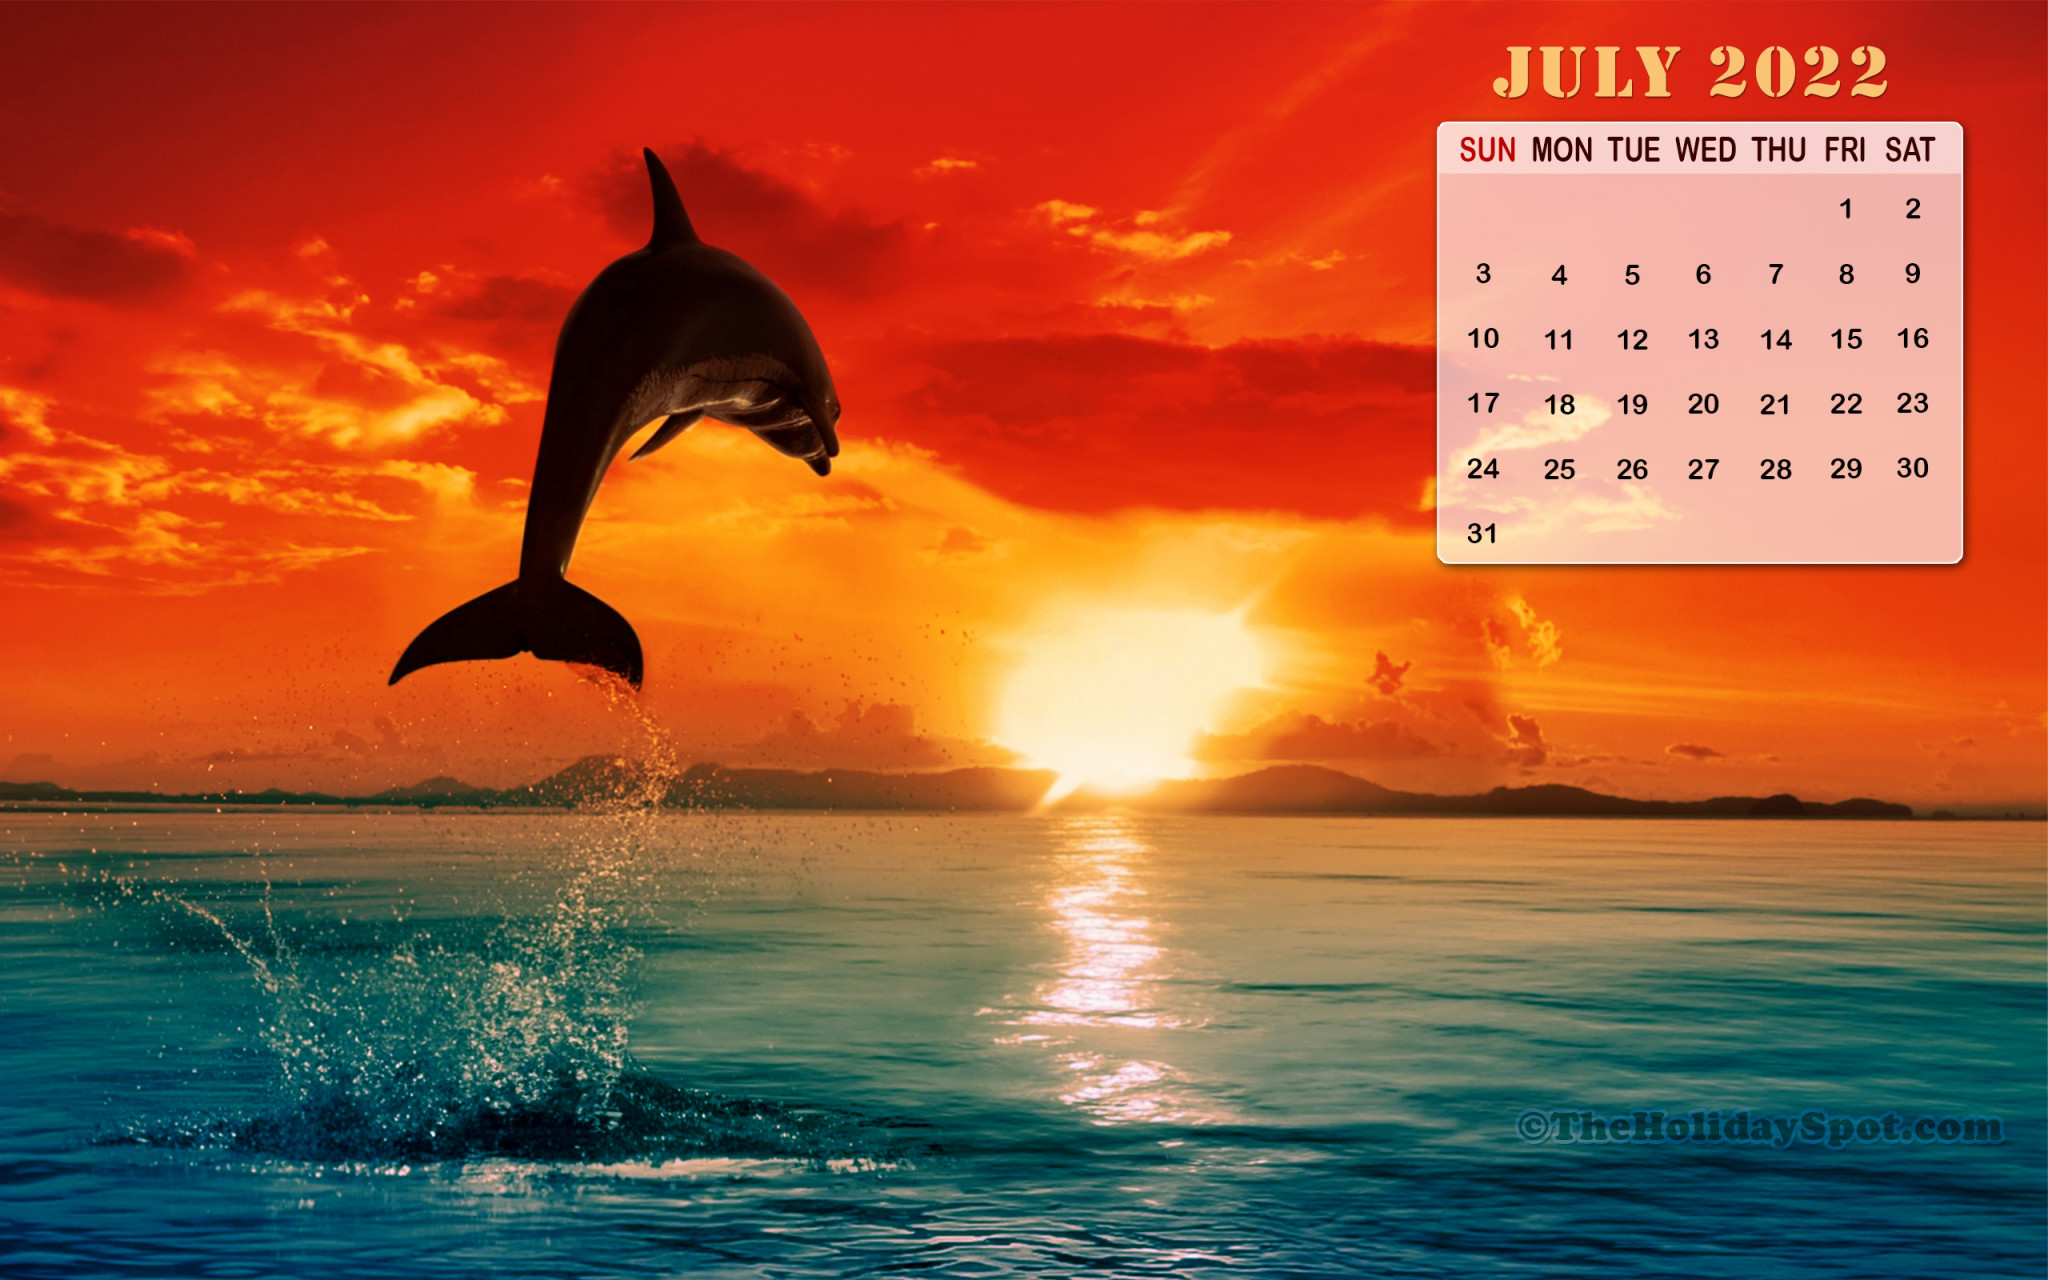 Free August 2022 Desktop Calendar Backgrounds  Nikkis Plate